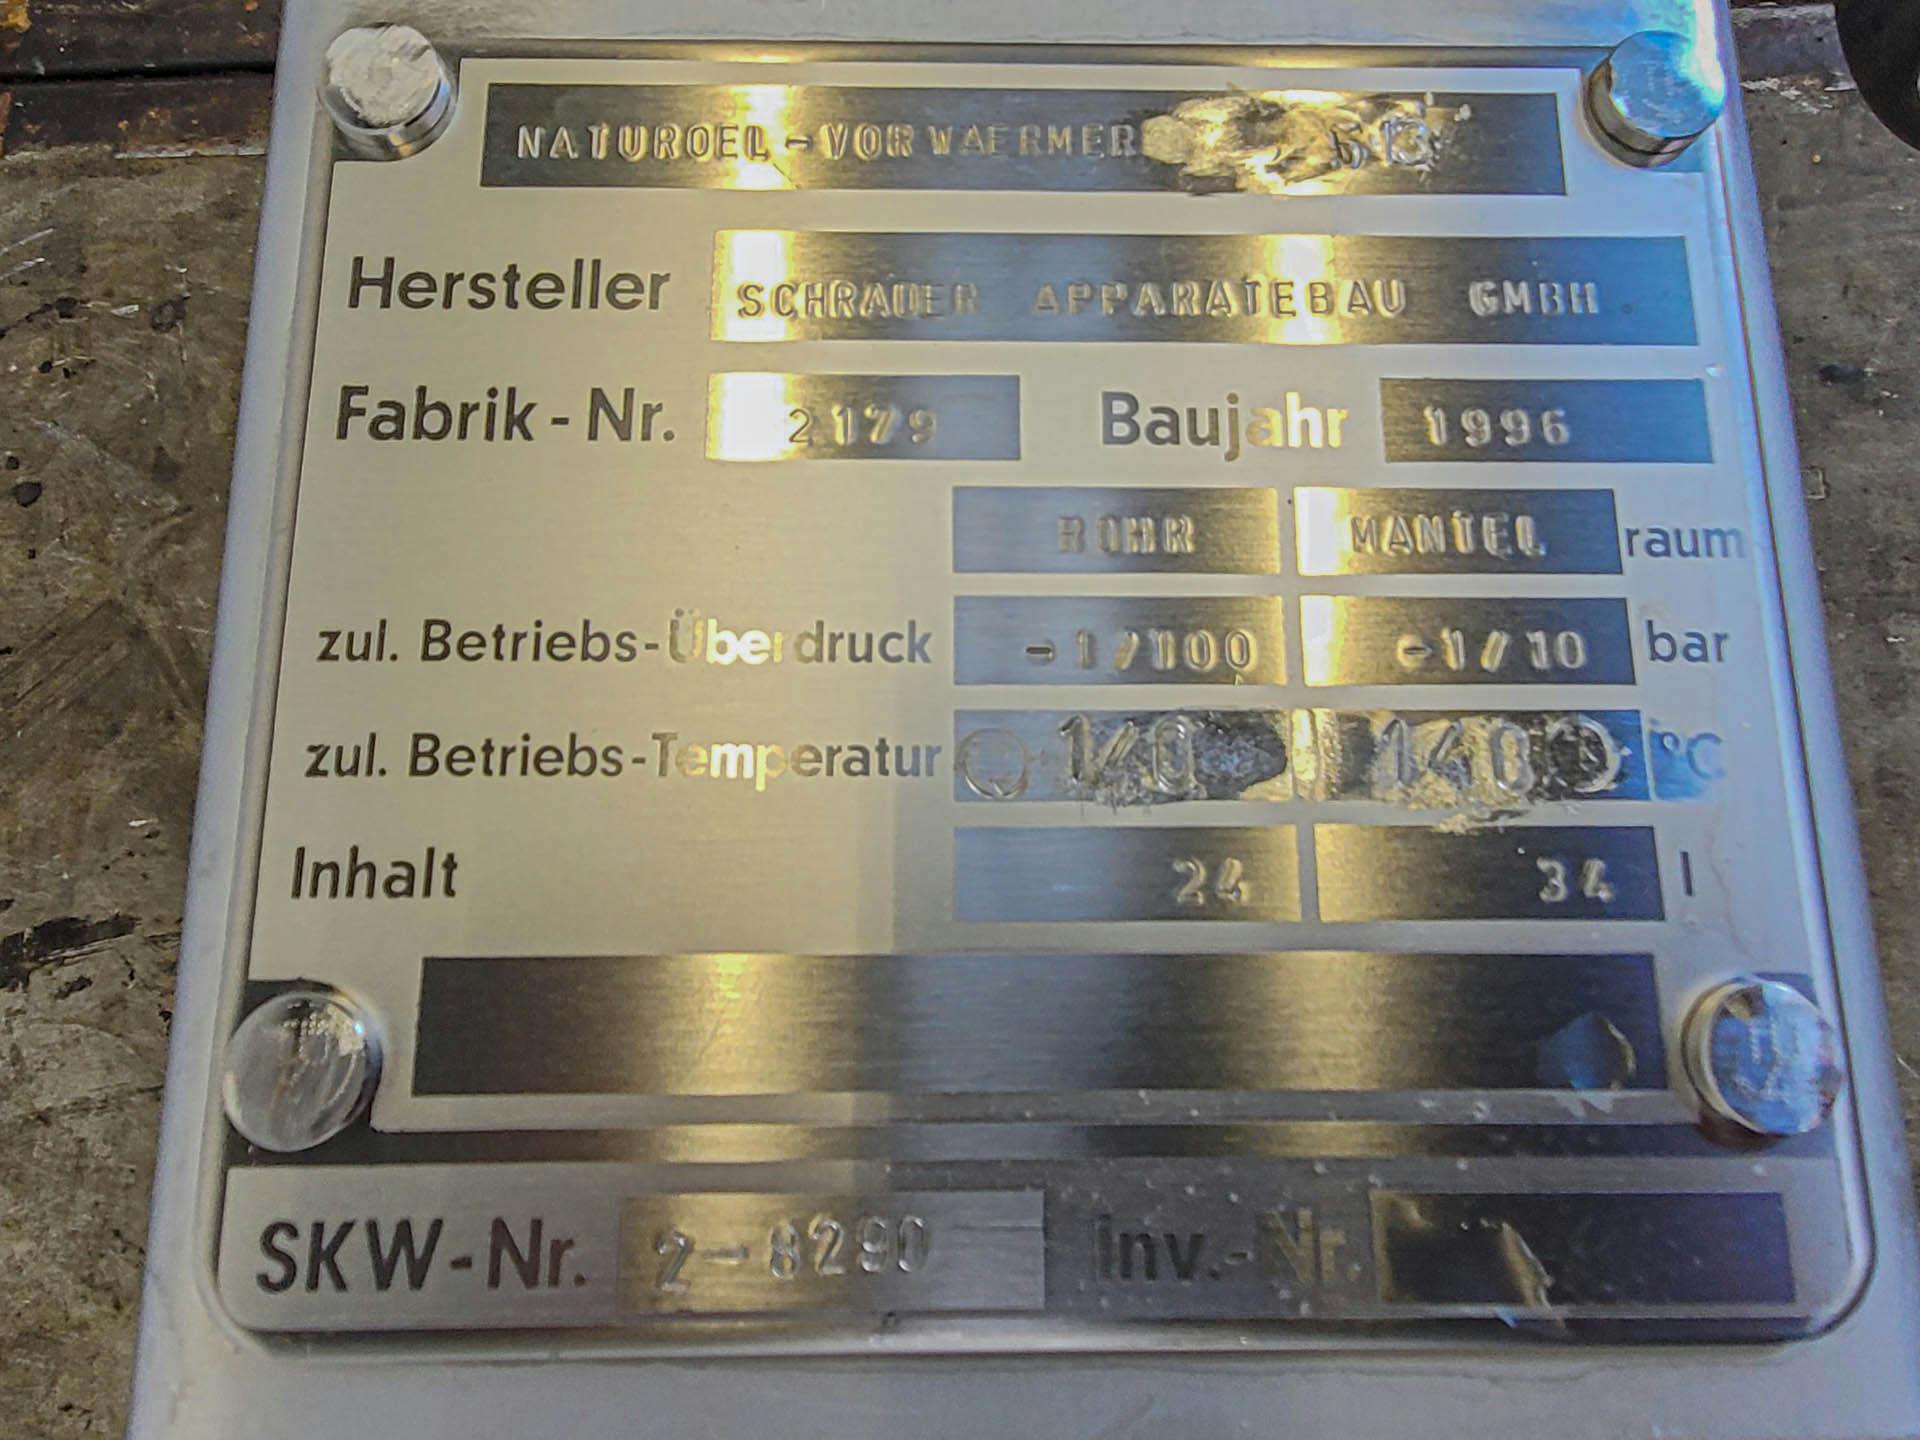 Schrader 100 bar - Rohrbündelwärmetauscher - image 6